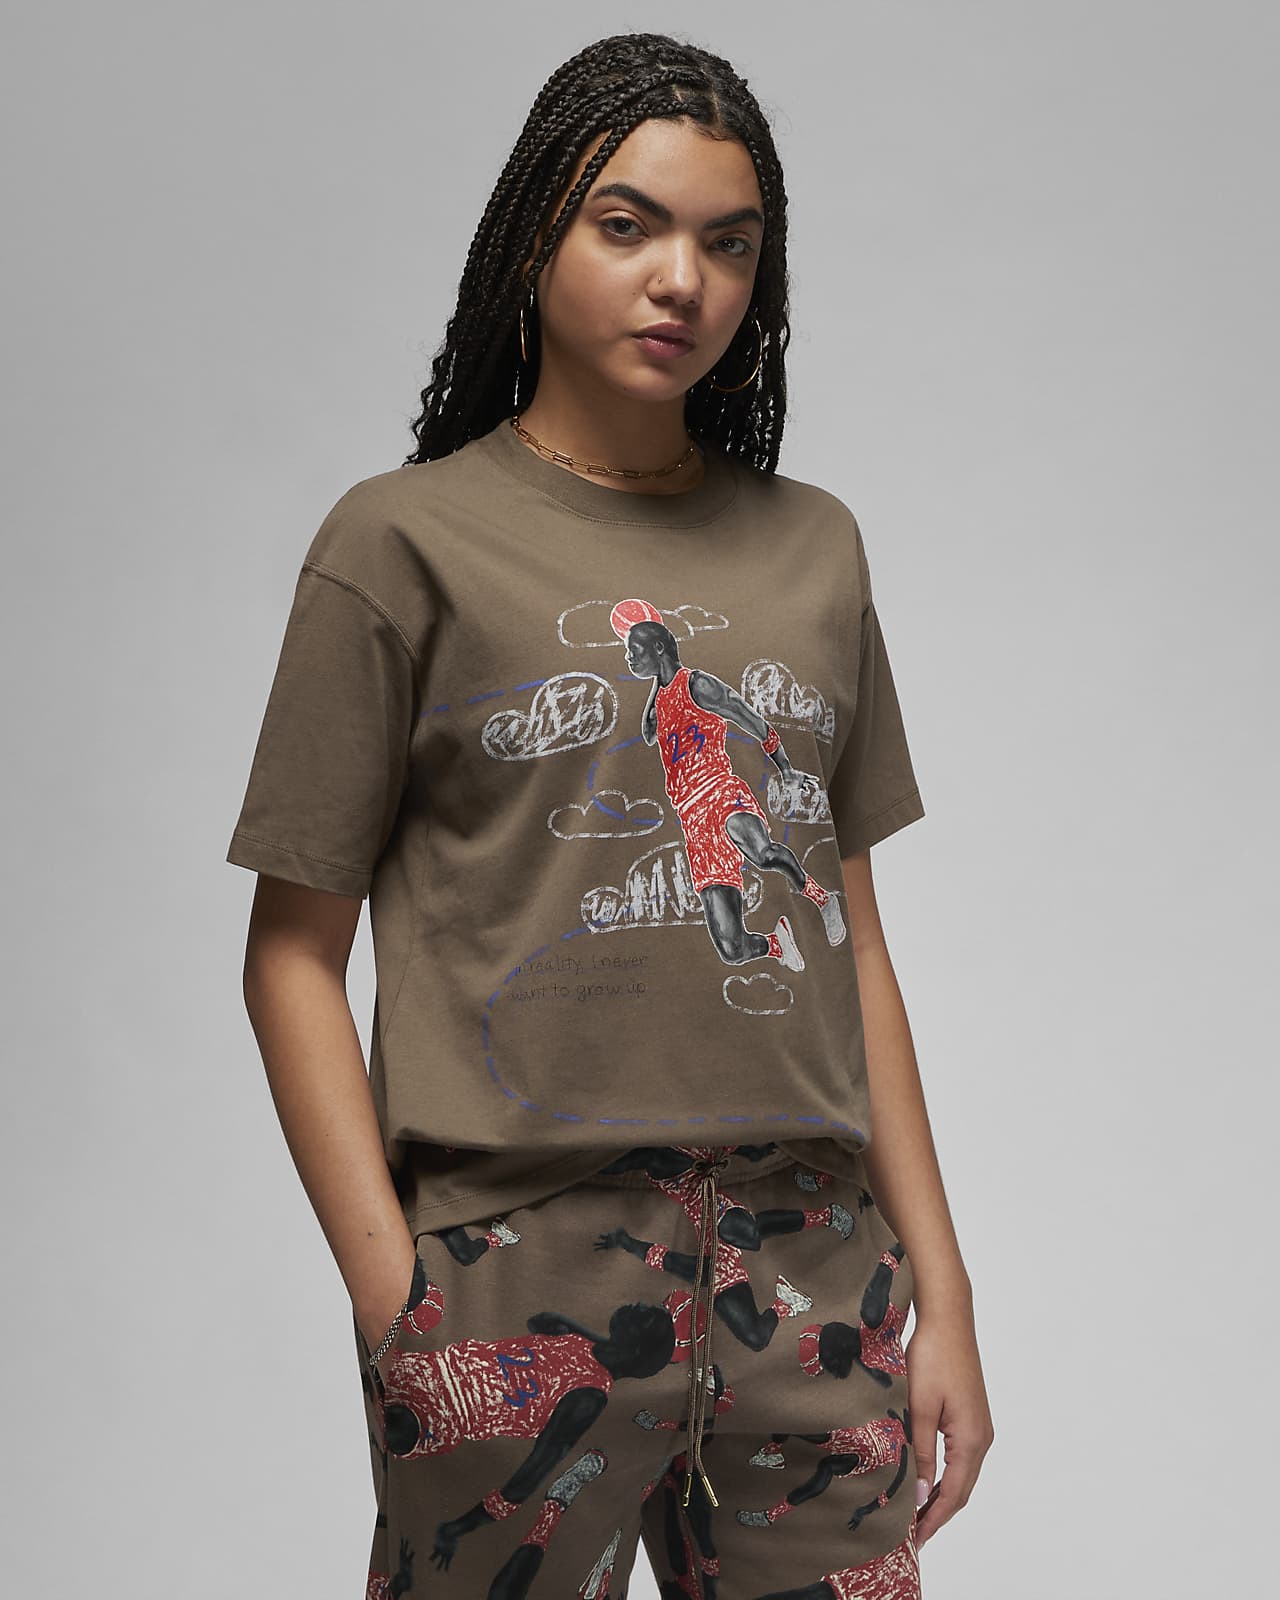 Tee-shirt Jordan Artist Series by Parker Duncan pour femme